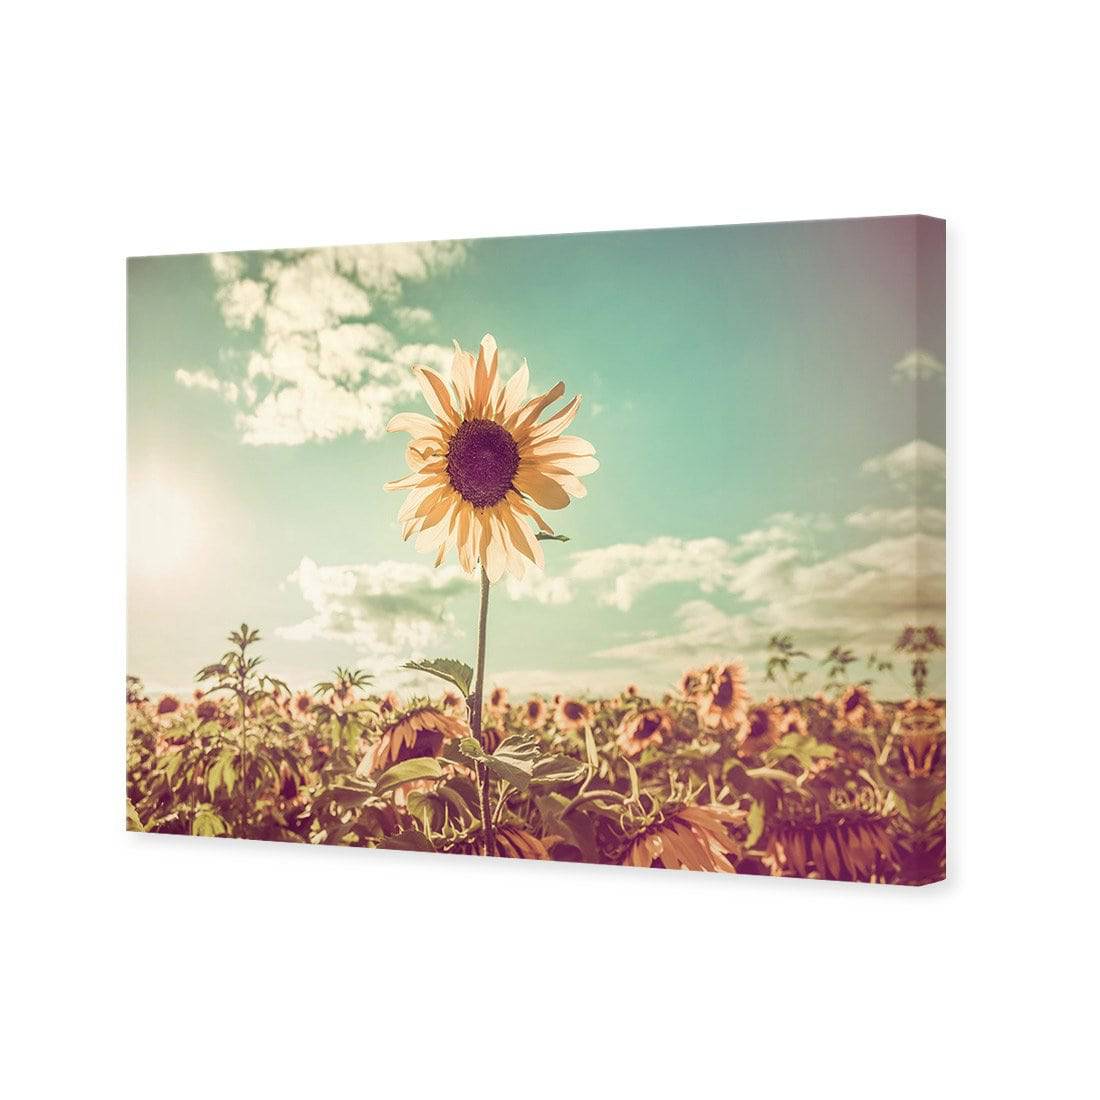 Sunflower Reborn Canvas Art-Canvas-Wall Art Designs-45x30cm-Canvas - No Frame-Wall Art Designs